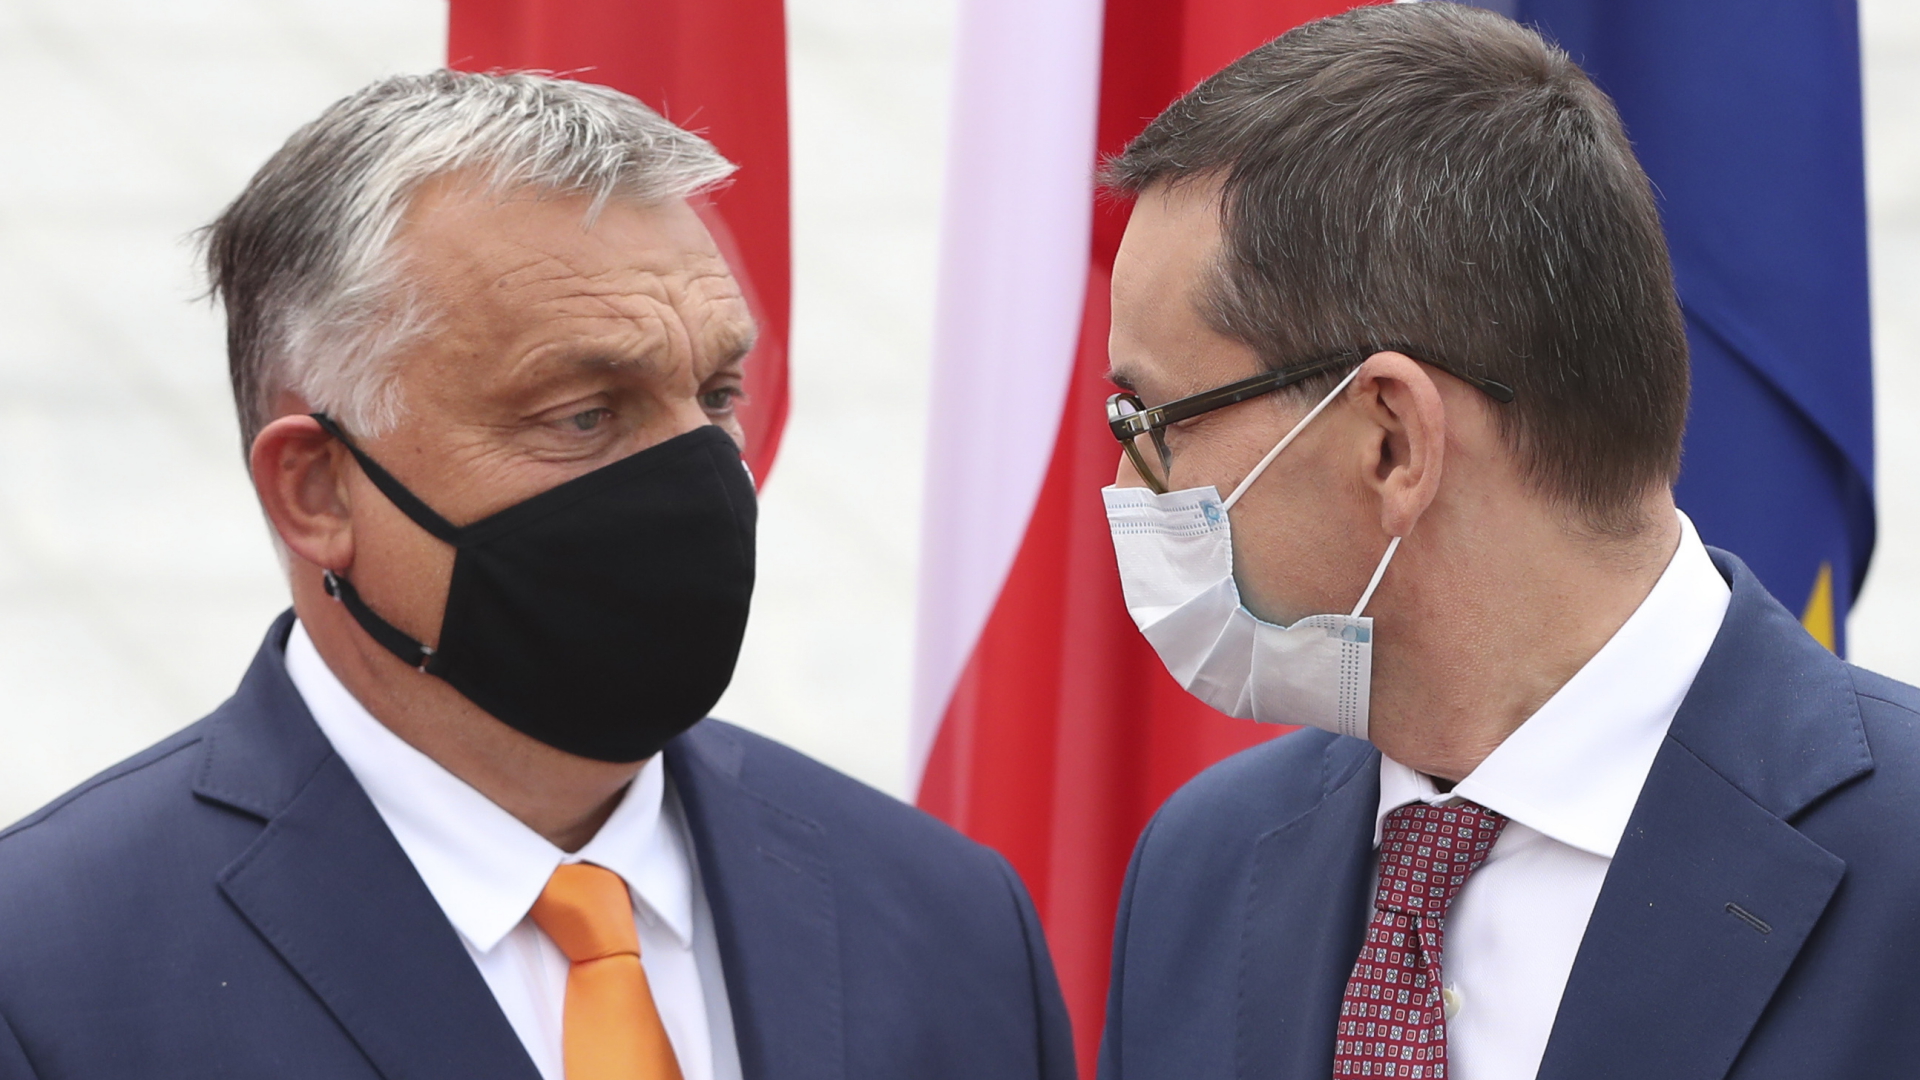 Mateusz Morawiecki, Premierminister von Polen, trägt einen Mundschutz und begrüßt Viktor Orban, Premierminister von Ungarn, ebenfalls mit Mundschutz, zum Treffen der Premierminister der Visegrad-Staaten. | dpa